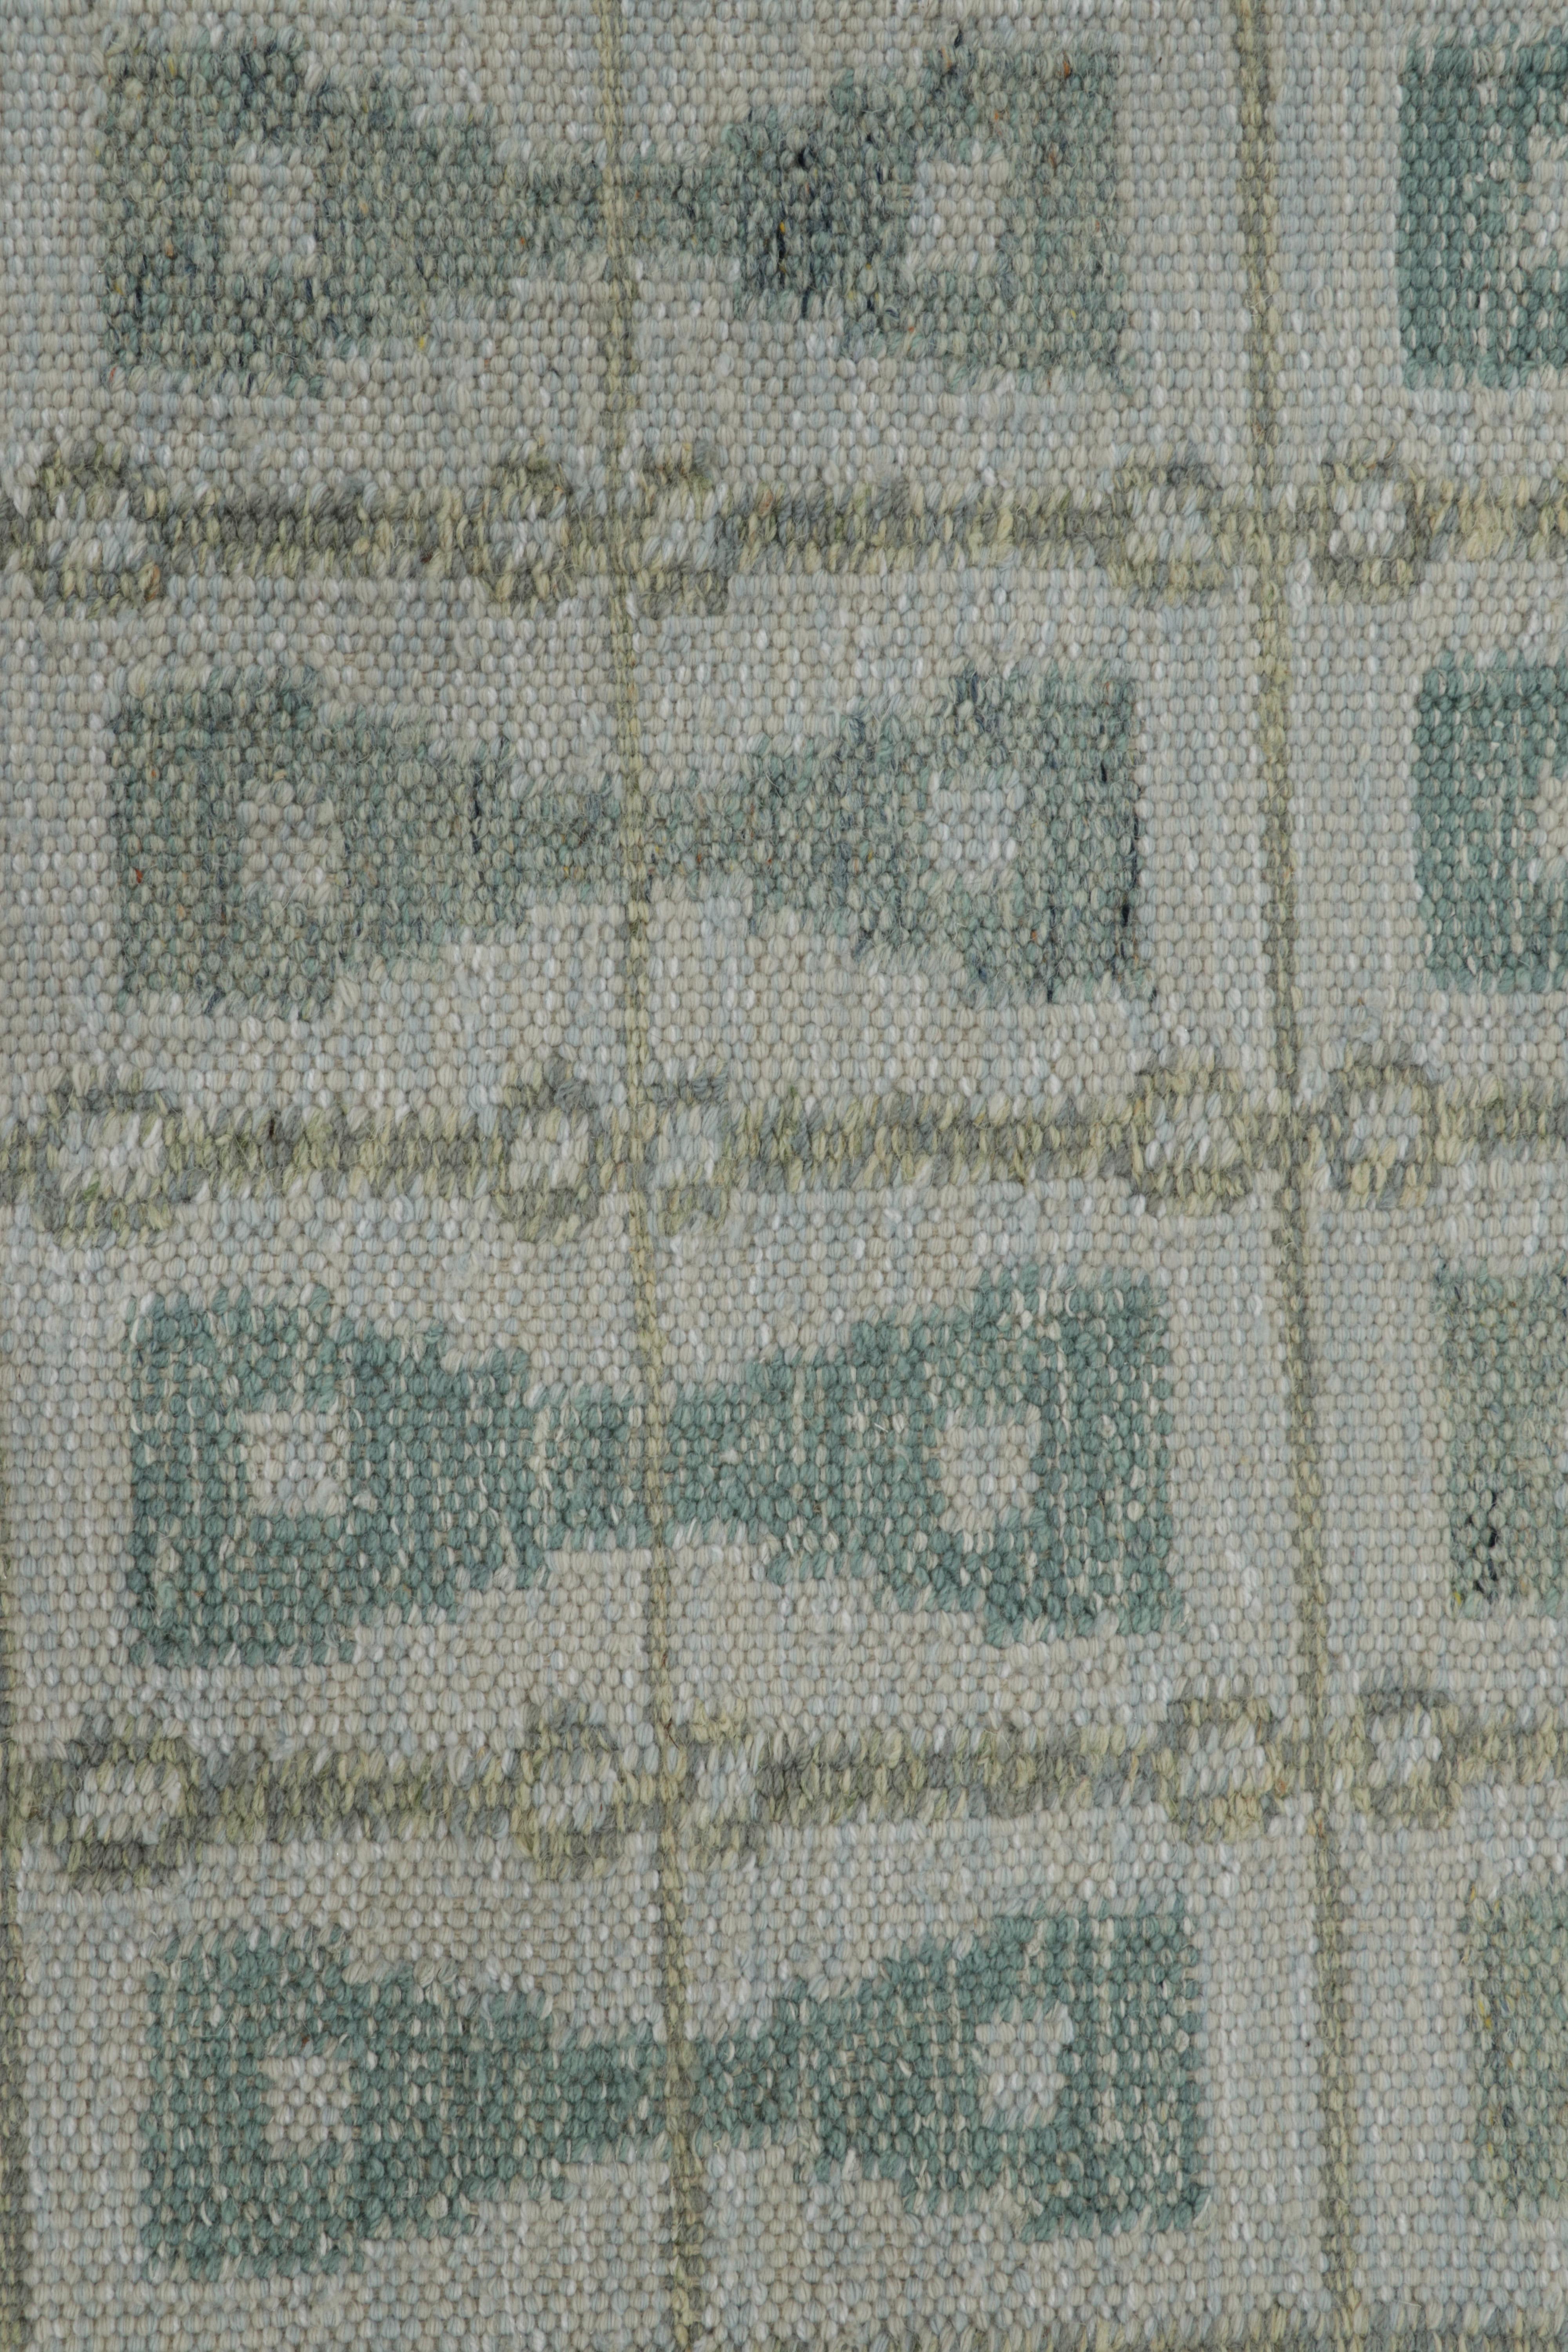 Issu d'une nouvelle collection passionnante de pièces en format cadeau, ce tapis d'appoint 4x4 de style suédois est un nouvel ajout audacieux à la Collection Scandinave de Rug & Kilim. Tissé à la main dans un tissage plat en laine avec également des